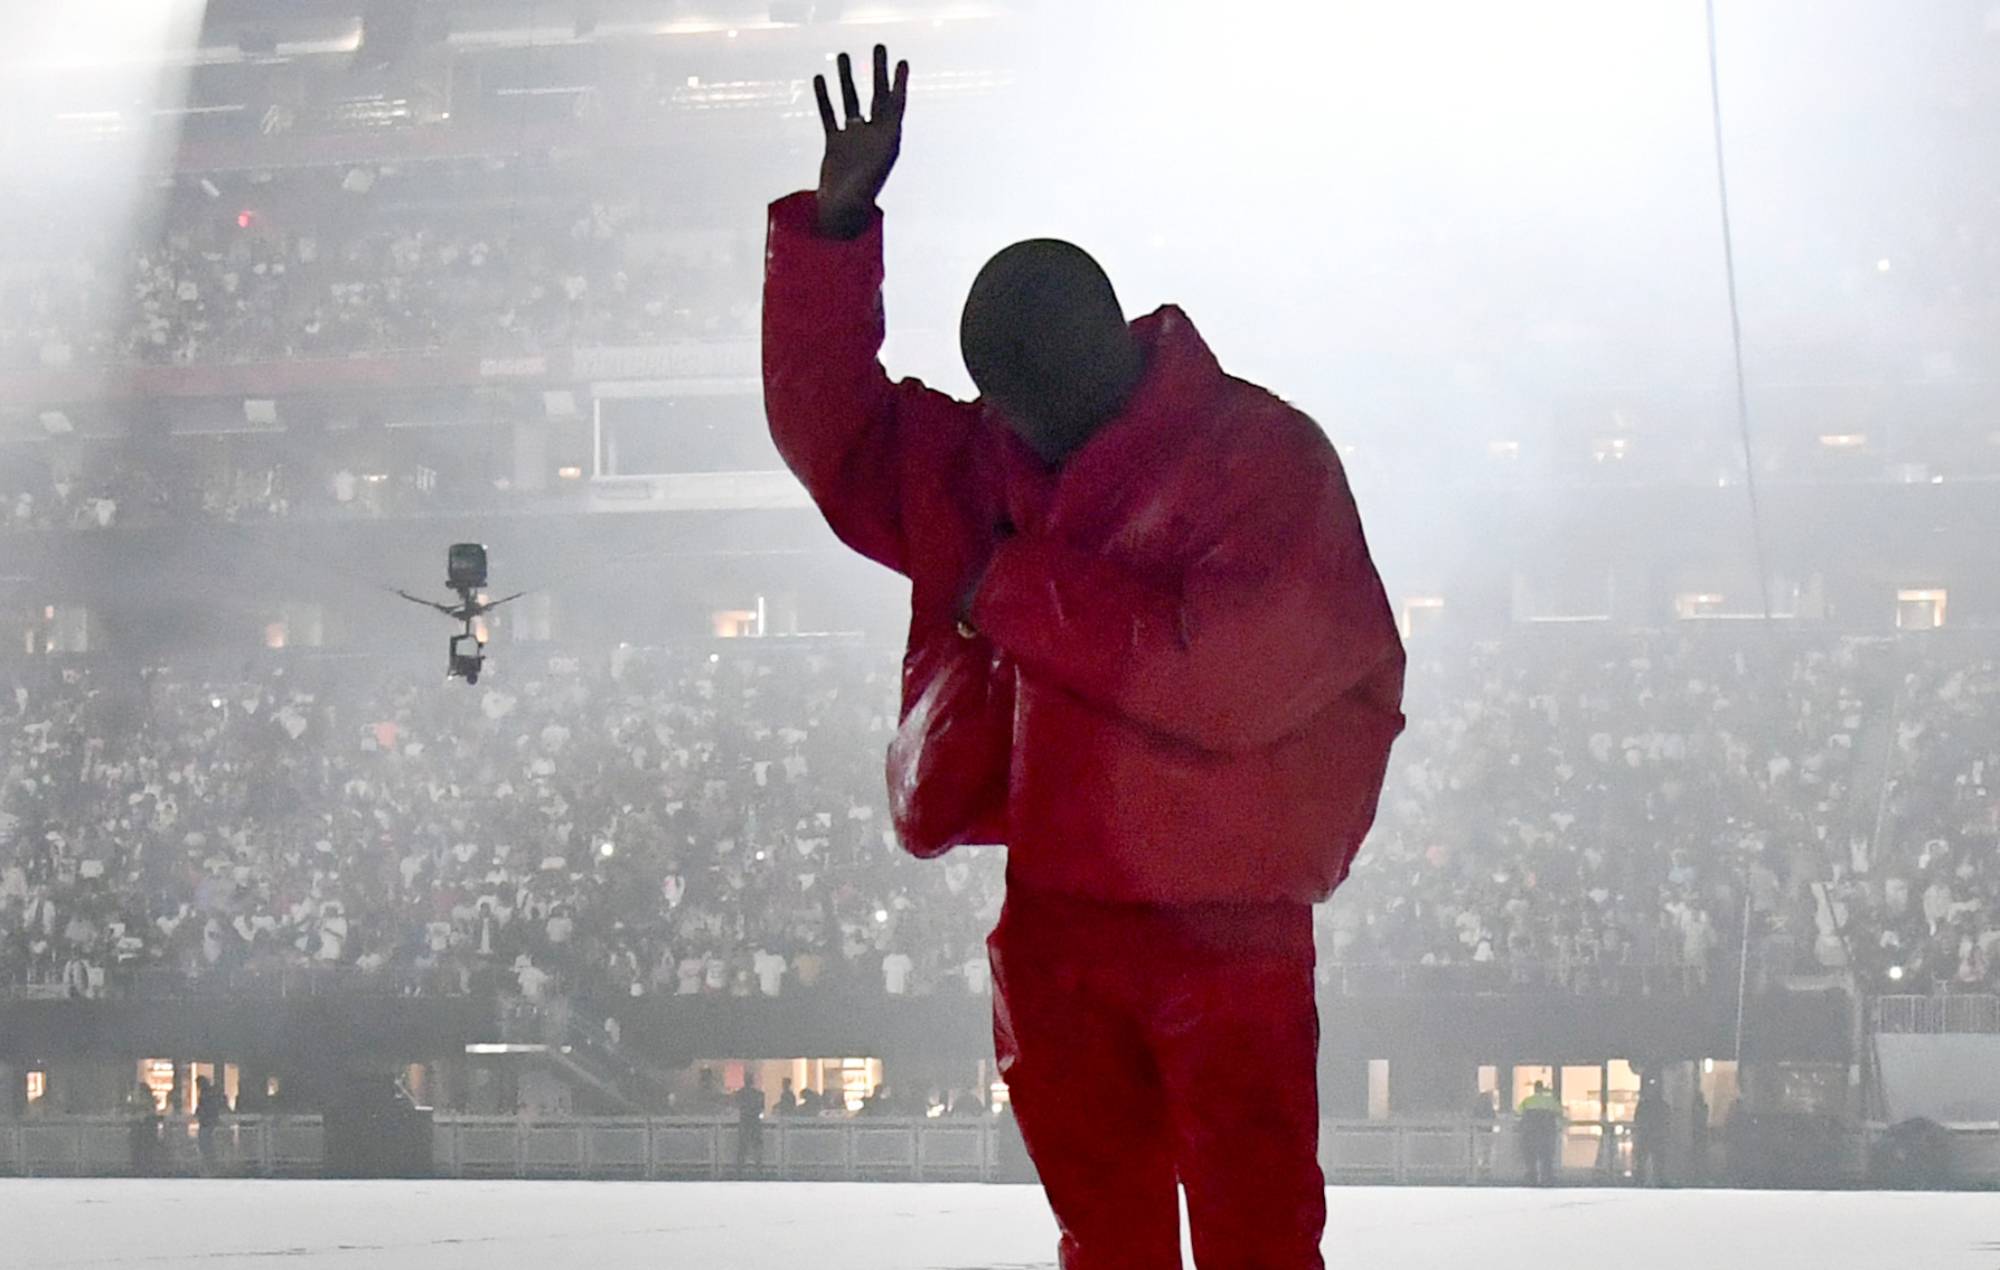 Albumi i ri i Kanye Westit është ‘shërim për të sëmurit, ushqim për të uriturit dhe strehë për të pastrehët’